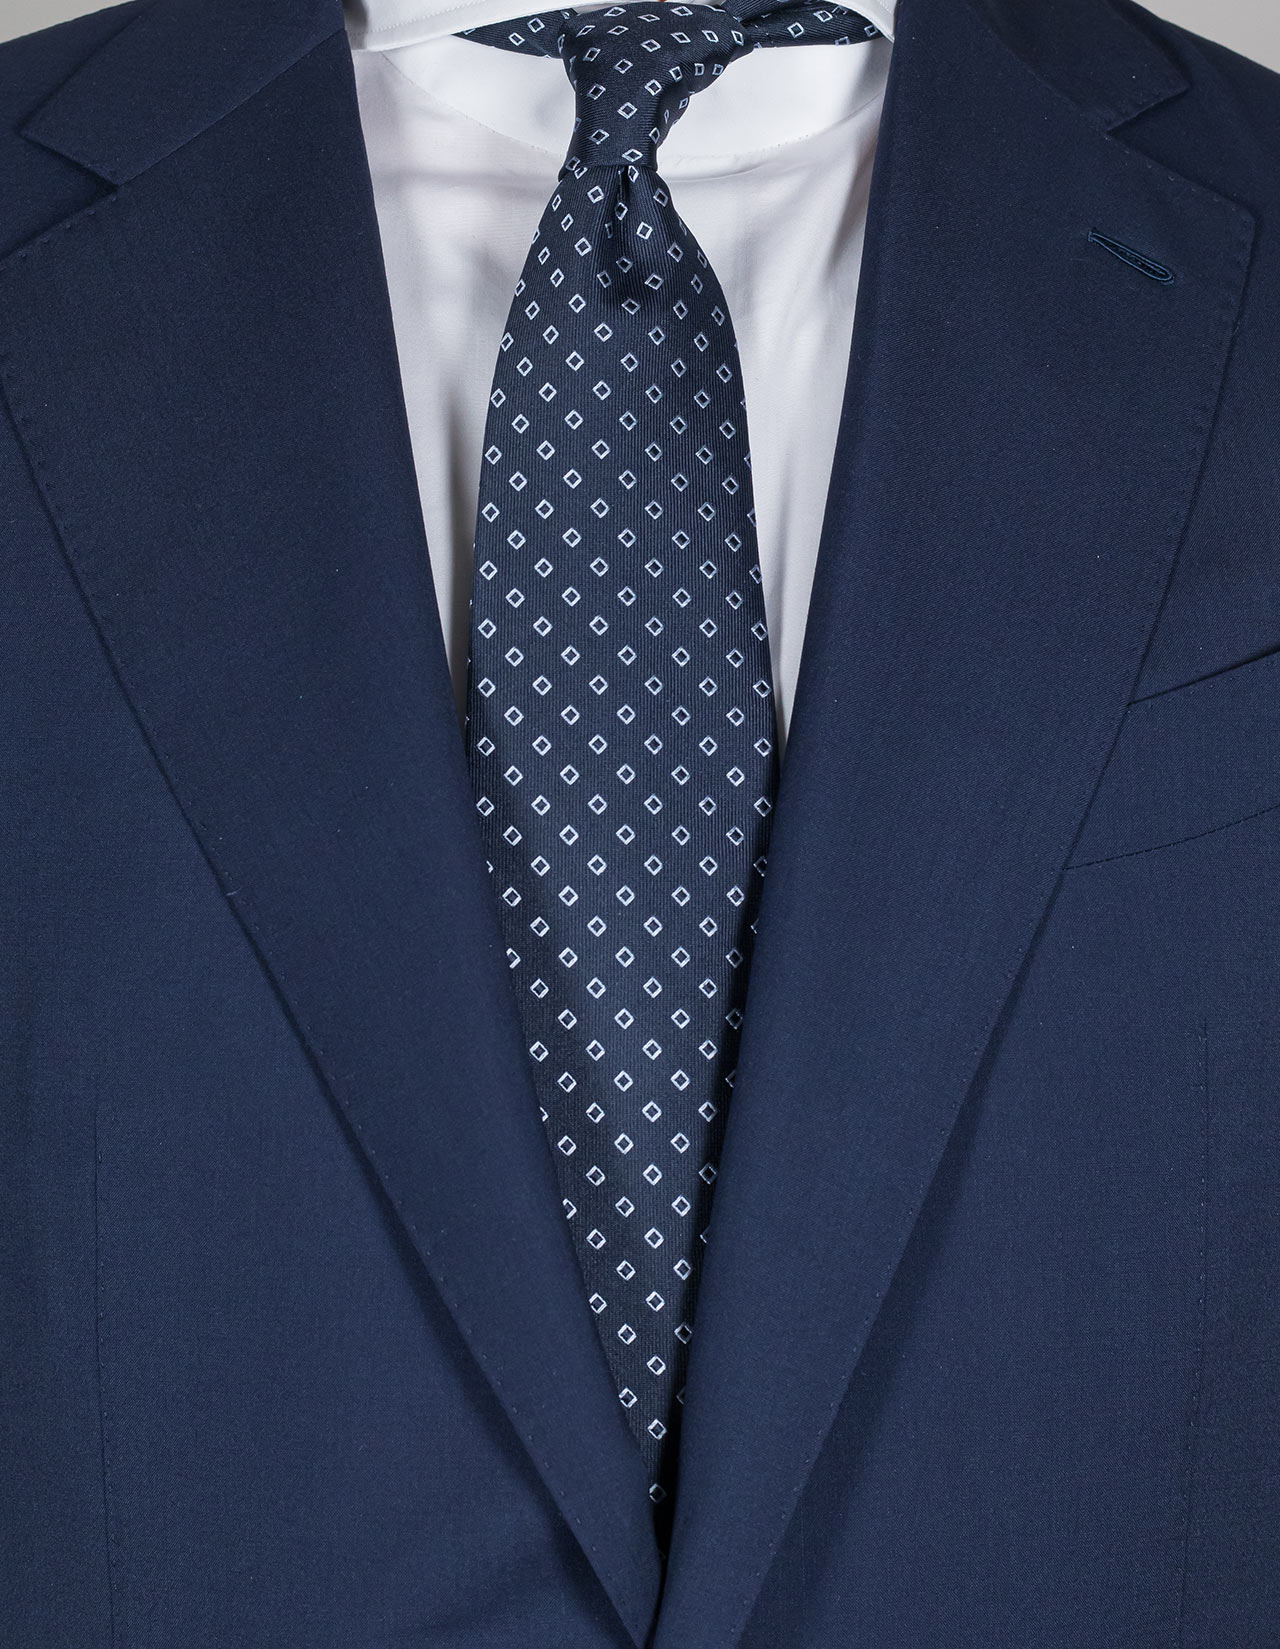 Luigi Borrelli Krawatte in dunkelblau mit weißen Rautenmuster